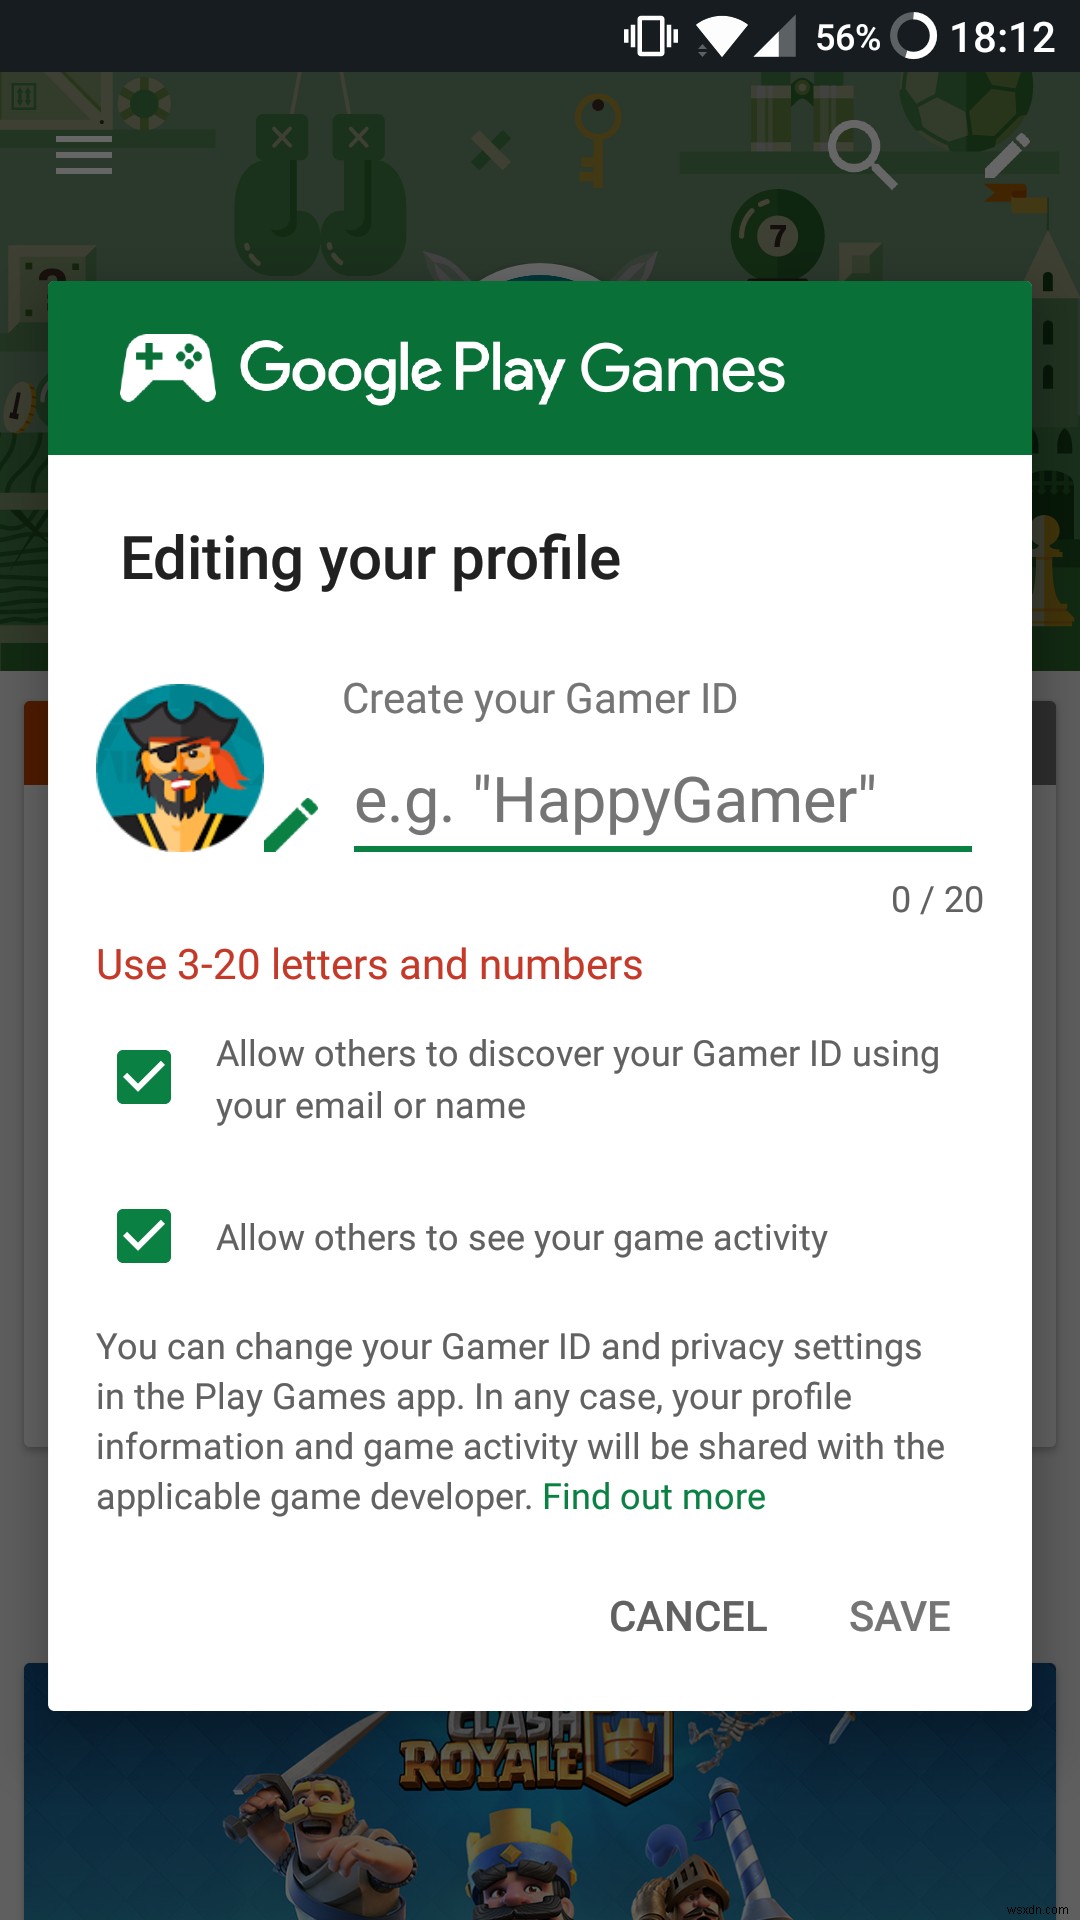 अपनी Google Play - गेम्स प्रोफ़ाइल कैसे संपादित करें